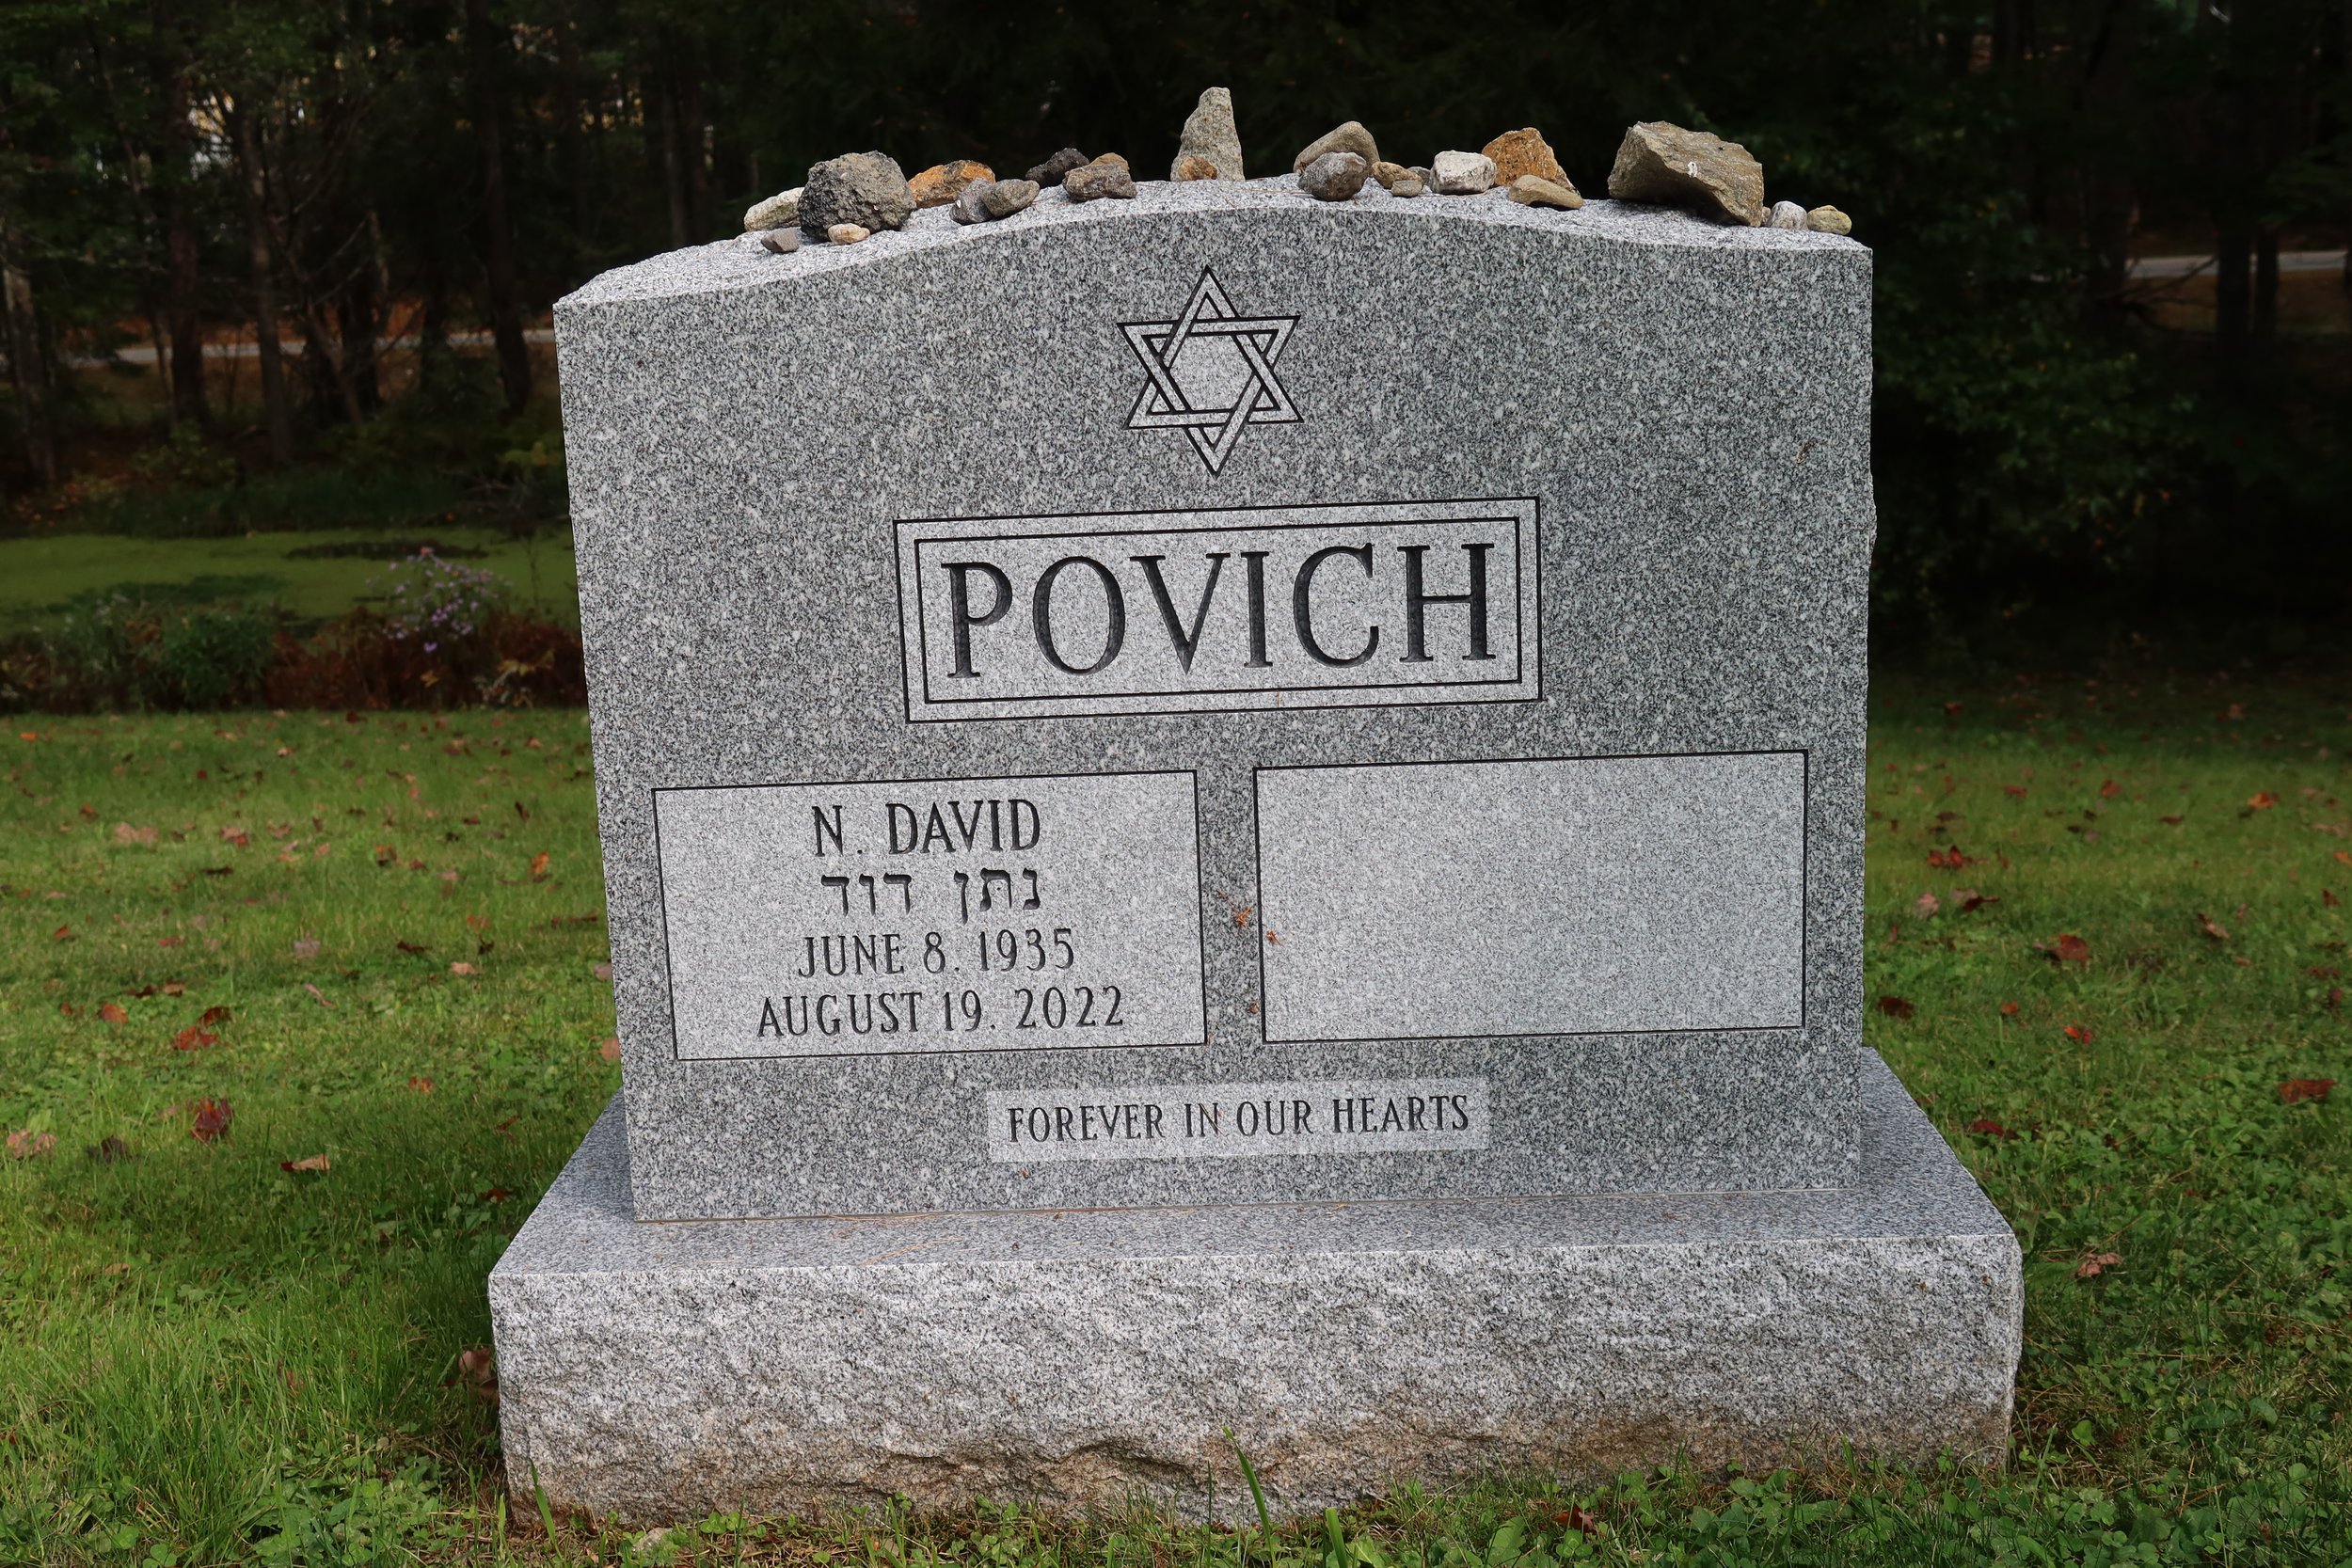 David Povich